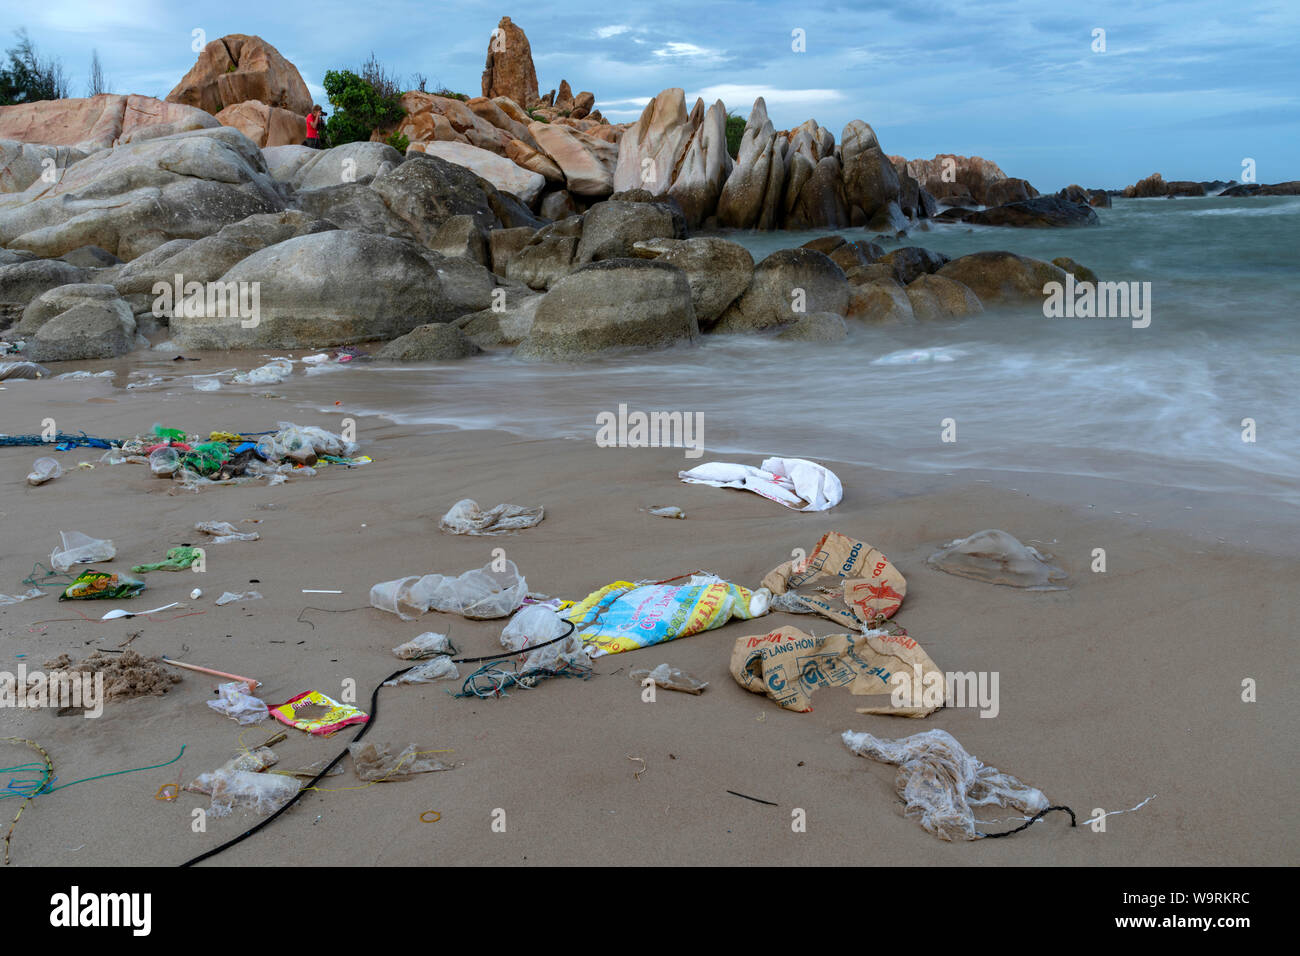 Asien, Asien, Südostasien, Vietnam, Süd-, Binh Thuan Provinz, Phan Thiet, verschmutzten Strand *** Local Caption *** Stockfoto